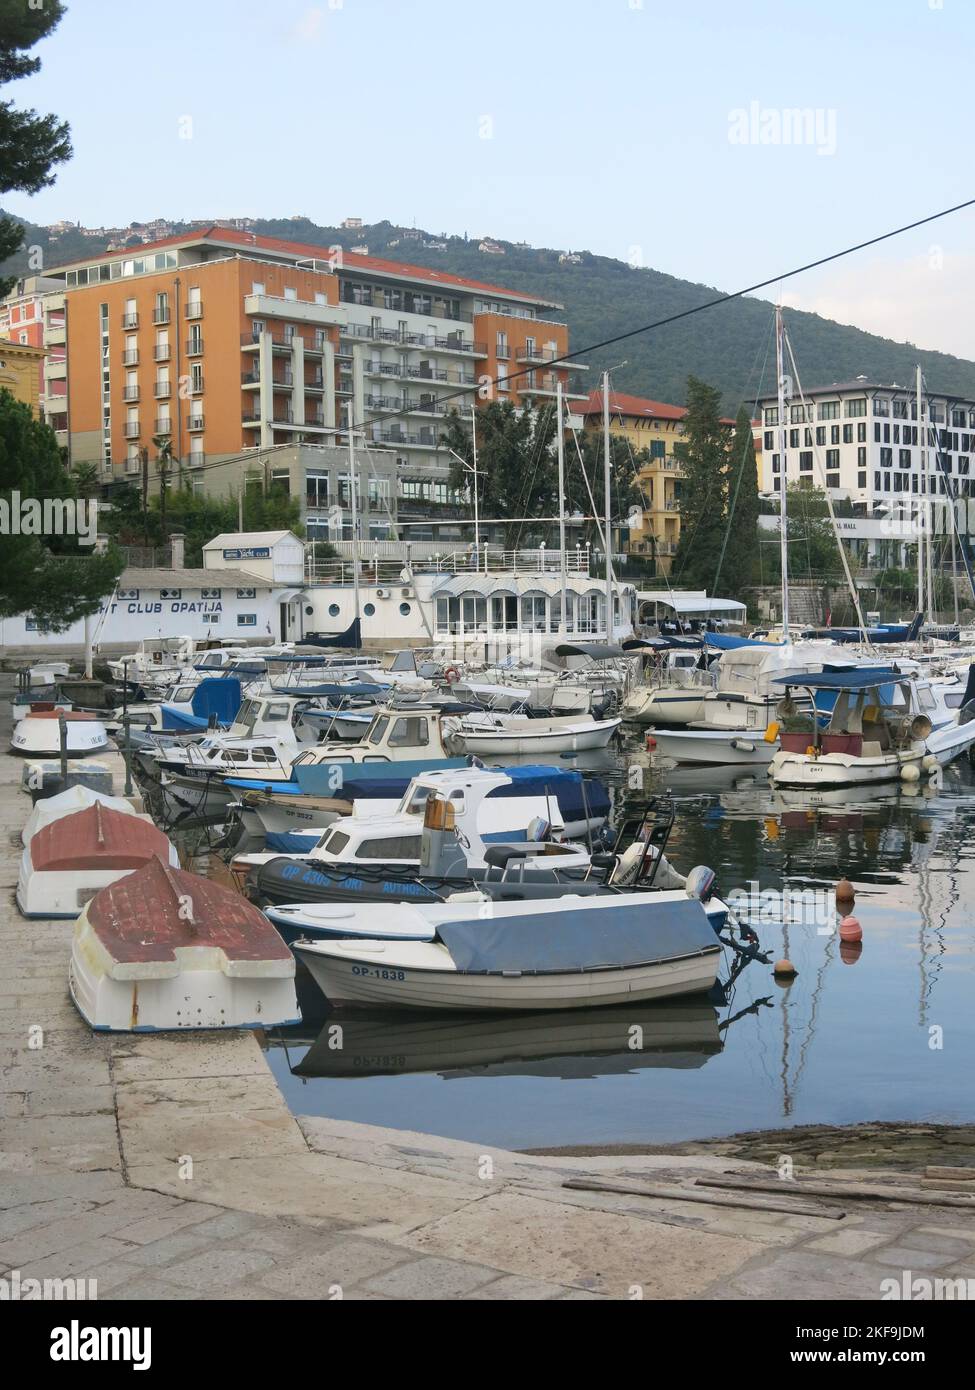 Il turismo croato: Una vista di uno dei porti sul lungomare di Opatija, una popolare località balneare sulla penisola istriana. Foto Stock